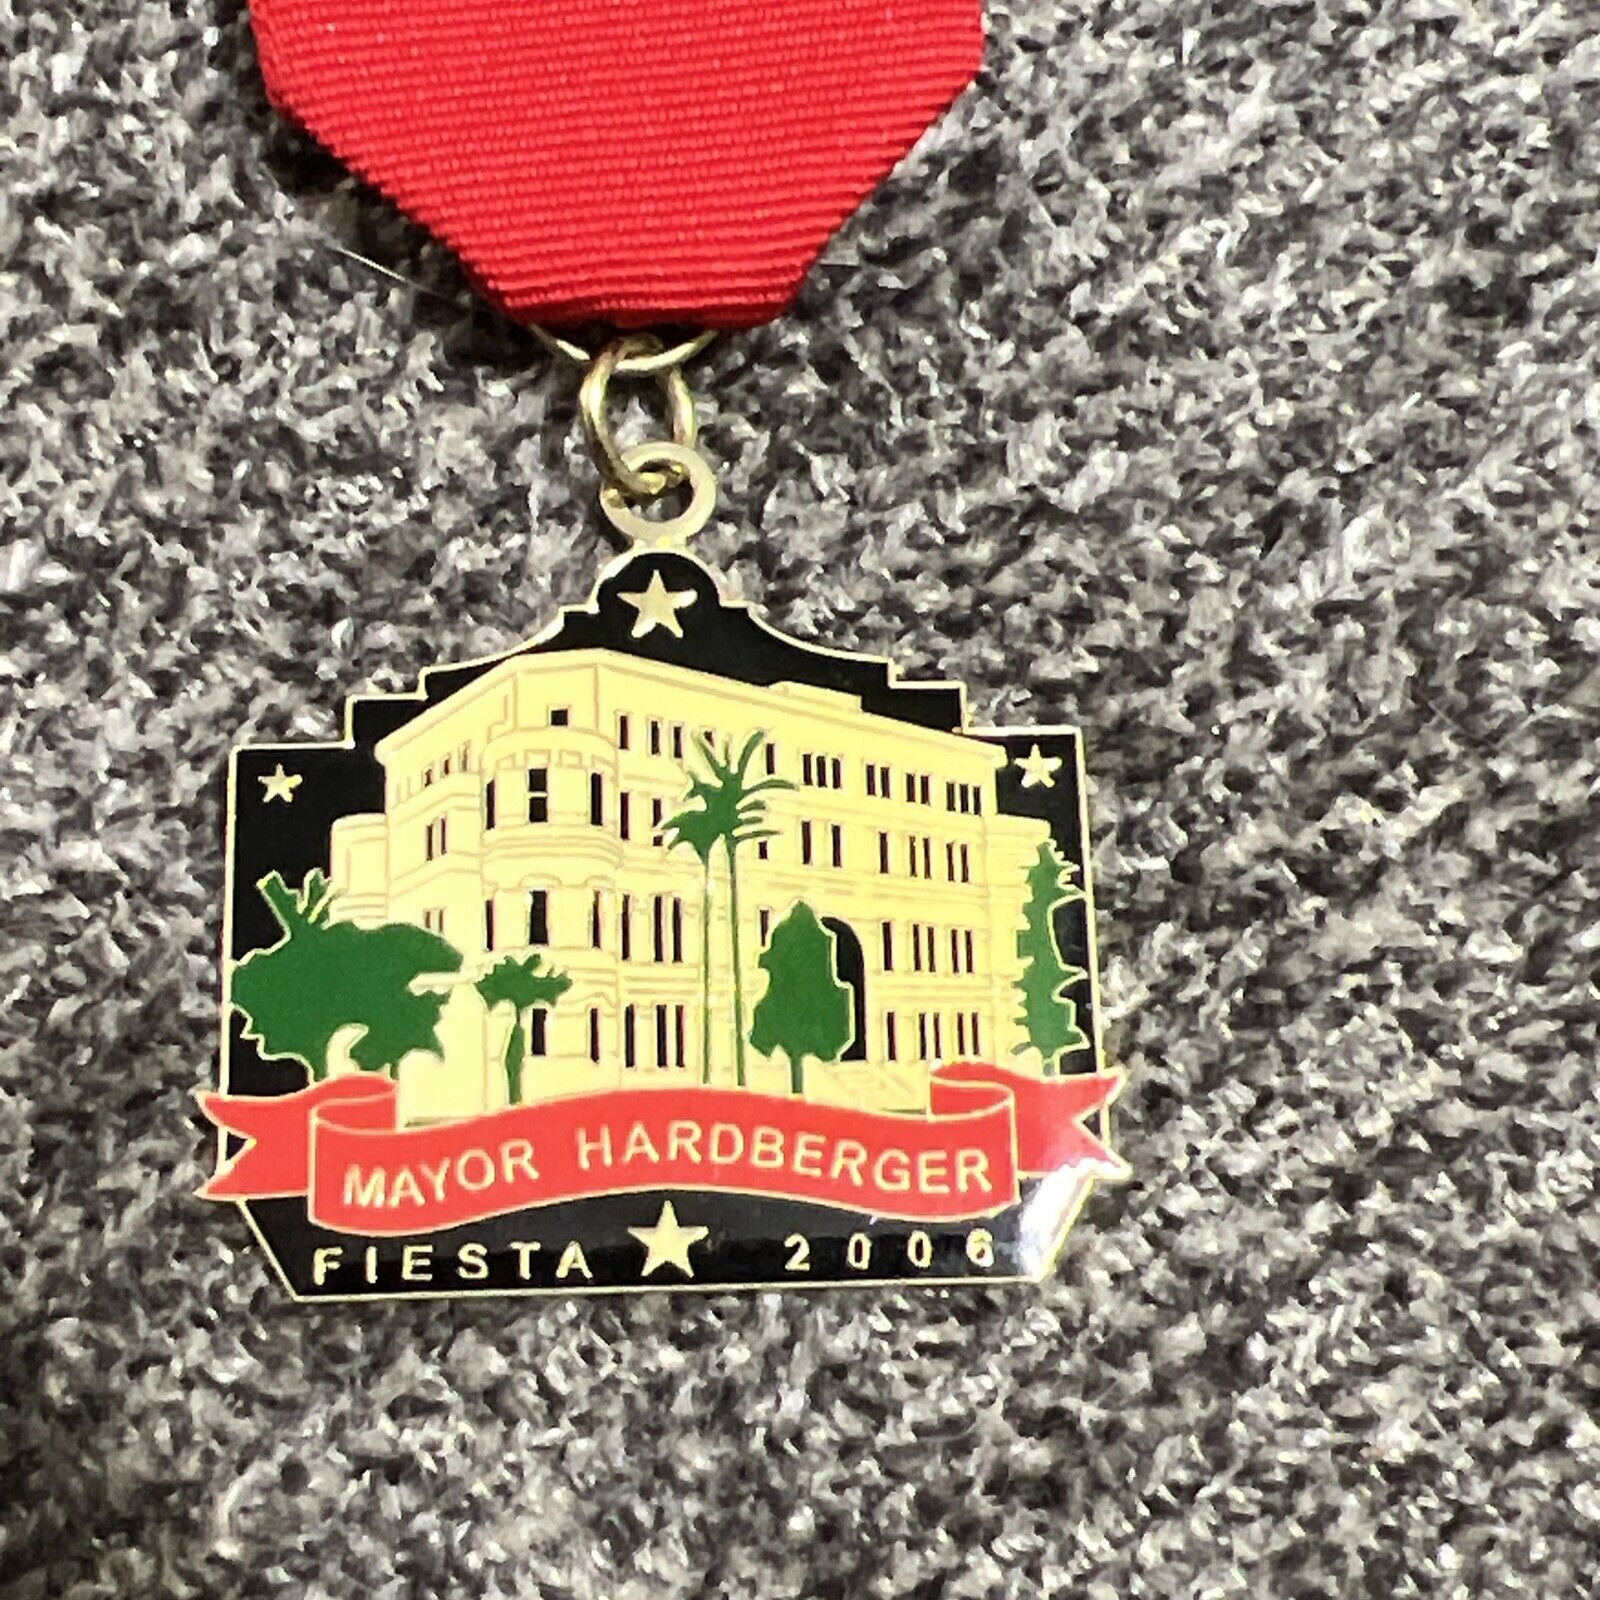 2006 Mayor Hardberger, San Antonio Mayor, Fiesta Medal- Very Rare Piece History 